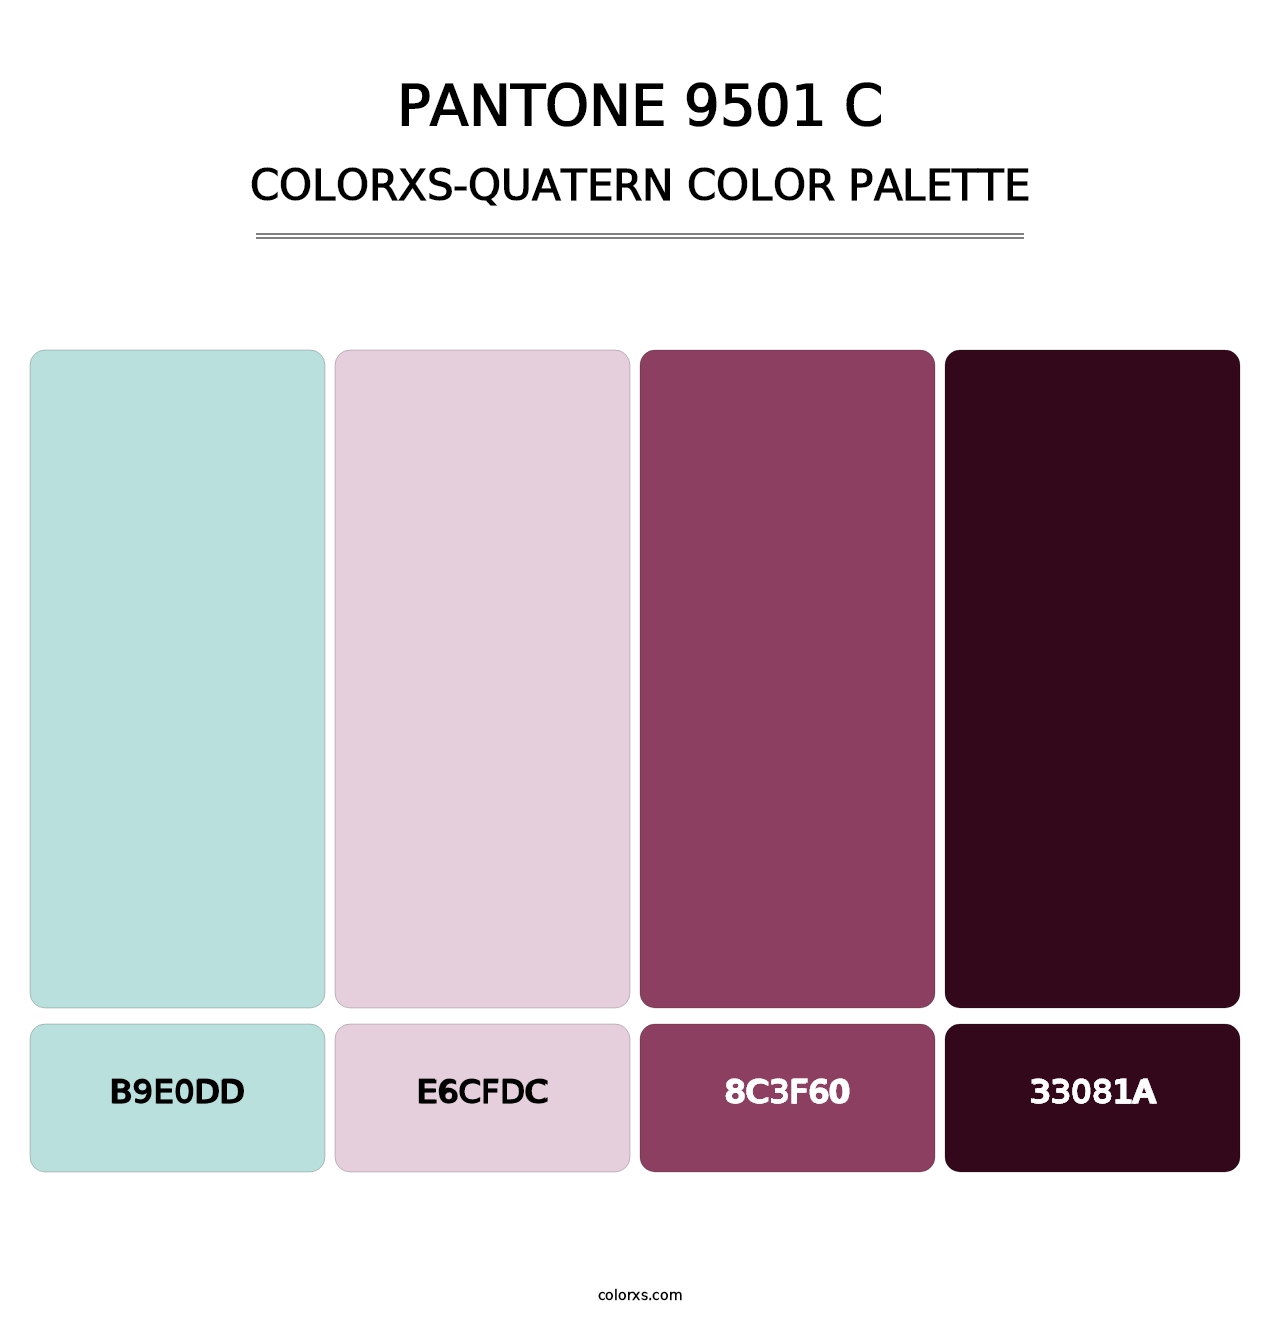 PANTONE 9501 C - Colorxs Quatern Palette